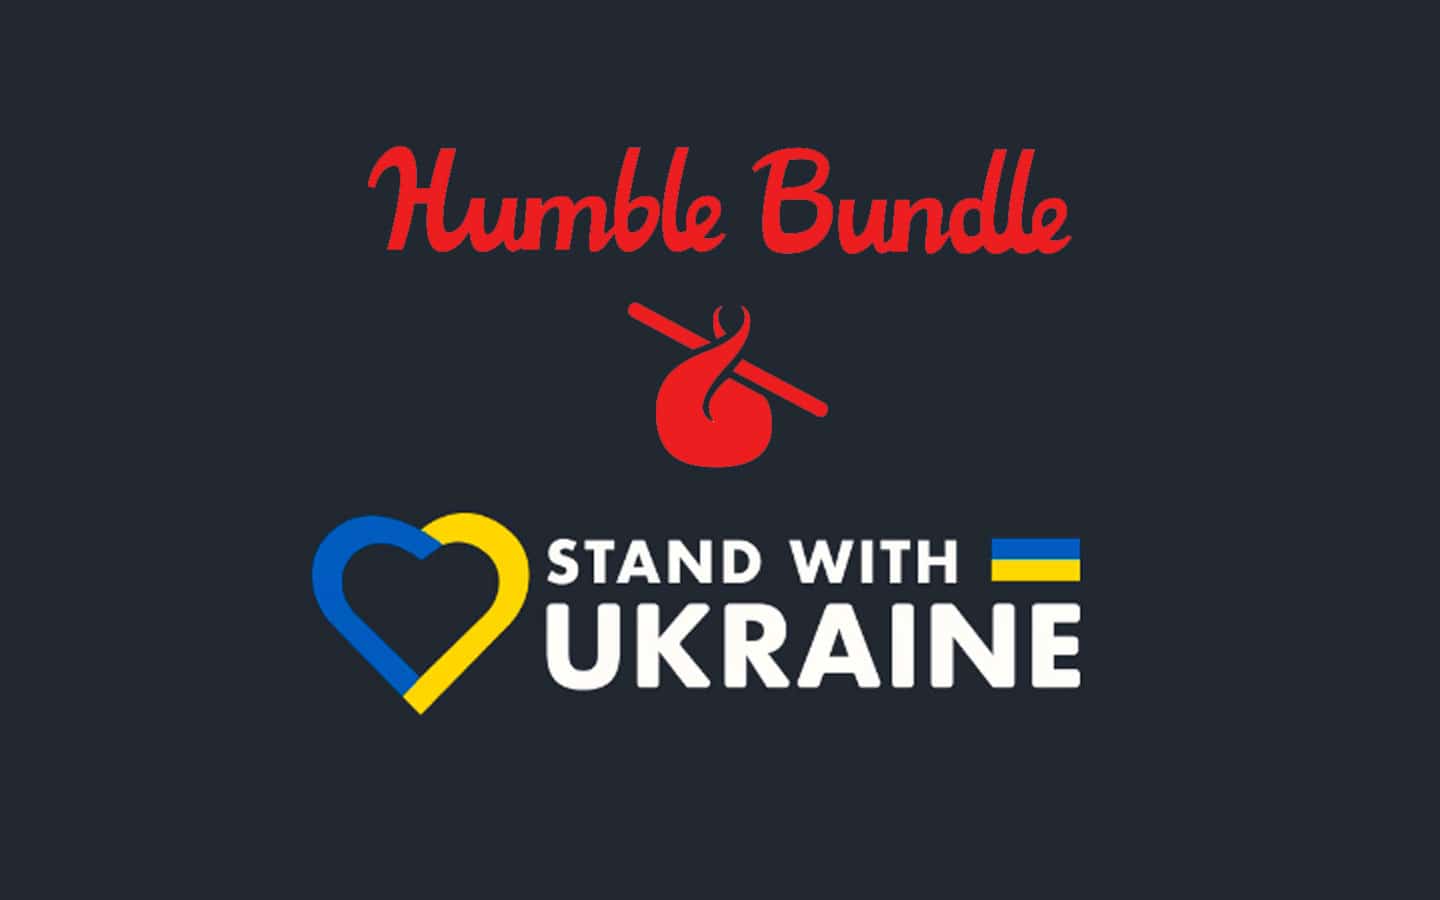 Humble Bundle ofrece más de 100 juegos, libros y software por tan solo $40 USD para ayudar a Ucrania